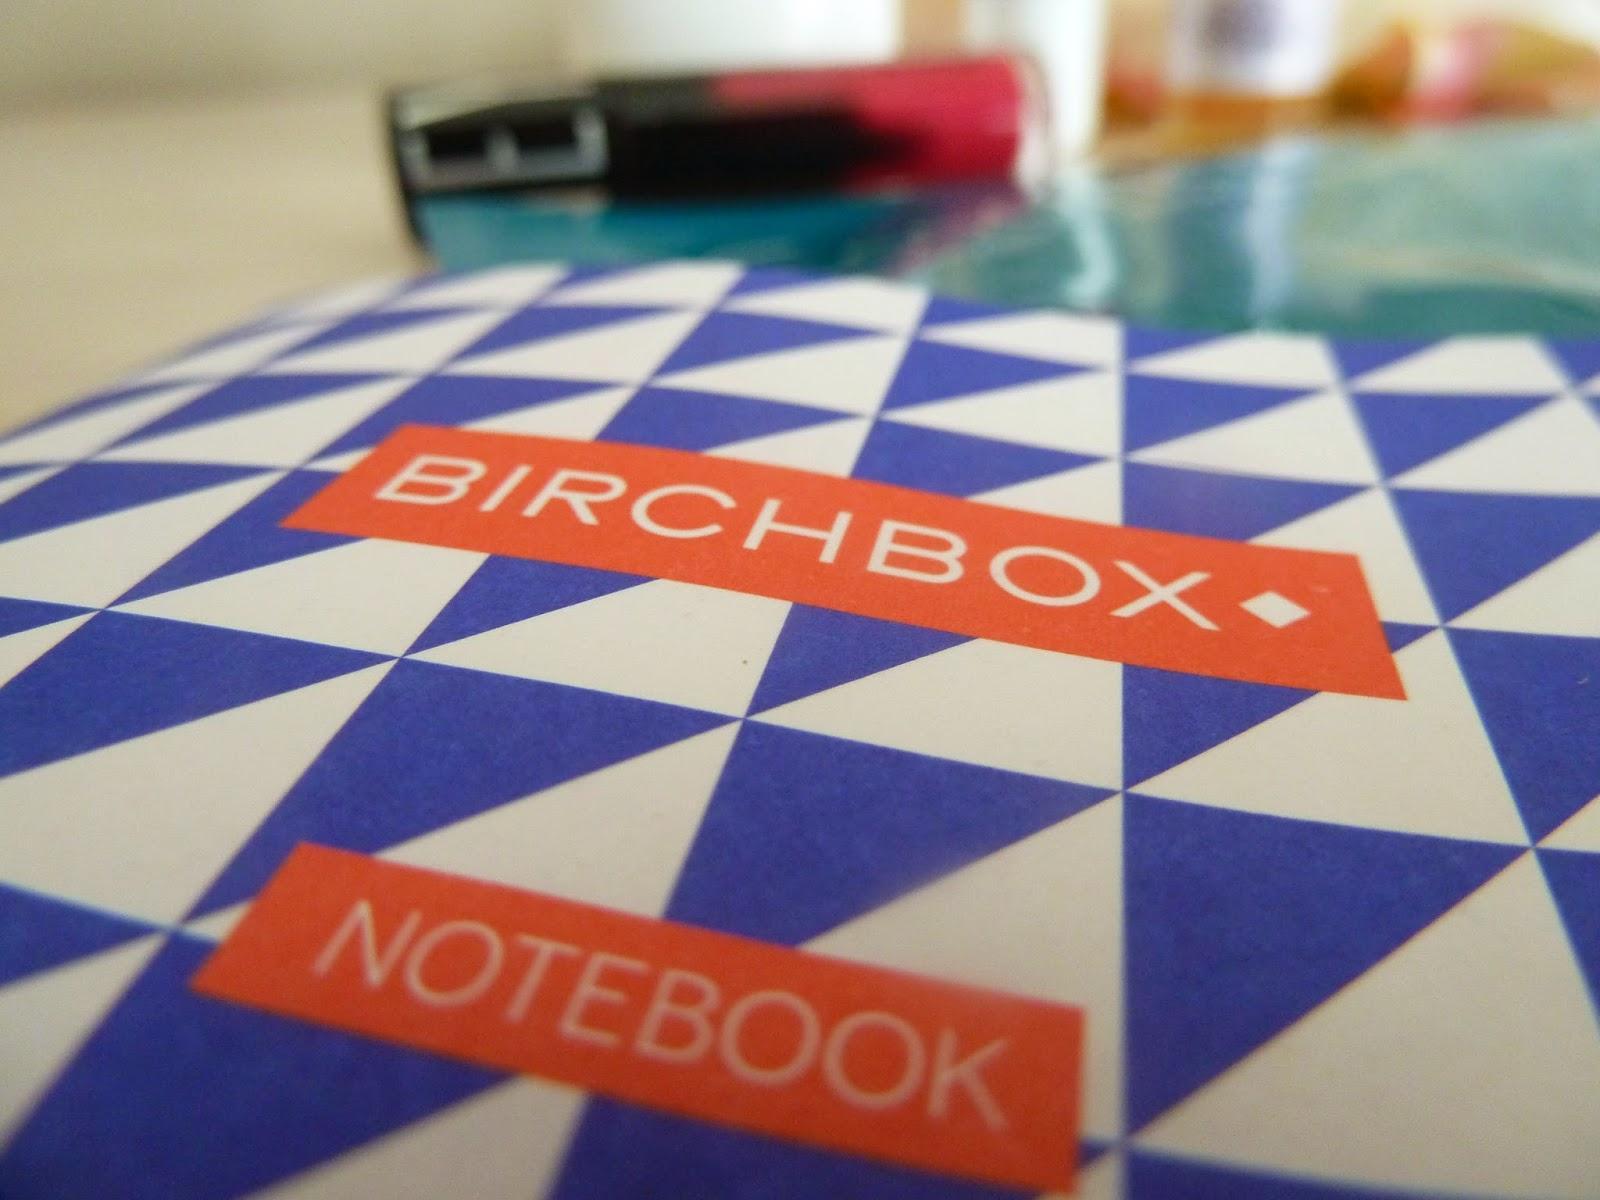 Les bonnes résolutions avec la Birchbox de janvier 2015 - Fit & Pretty